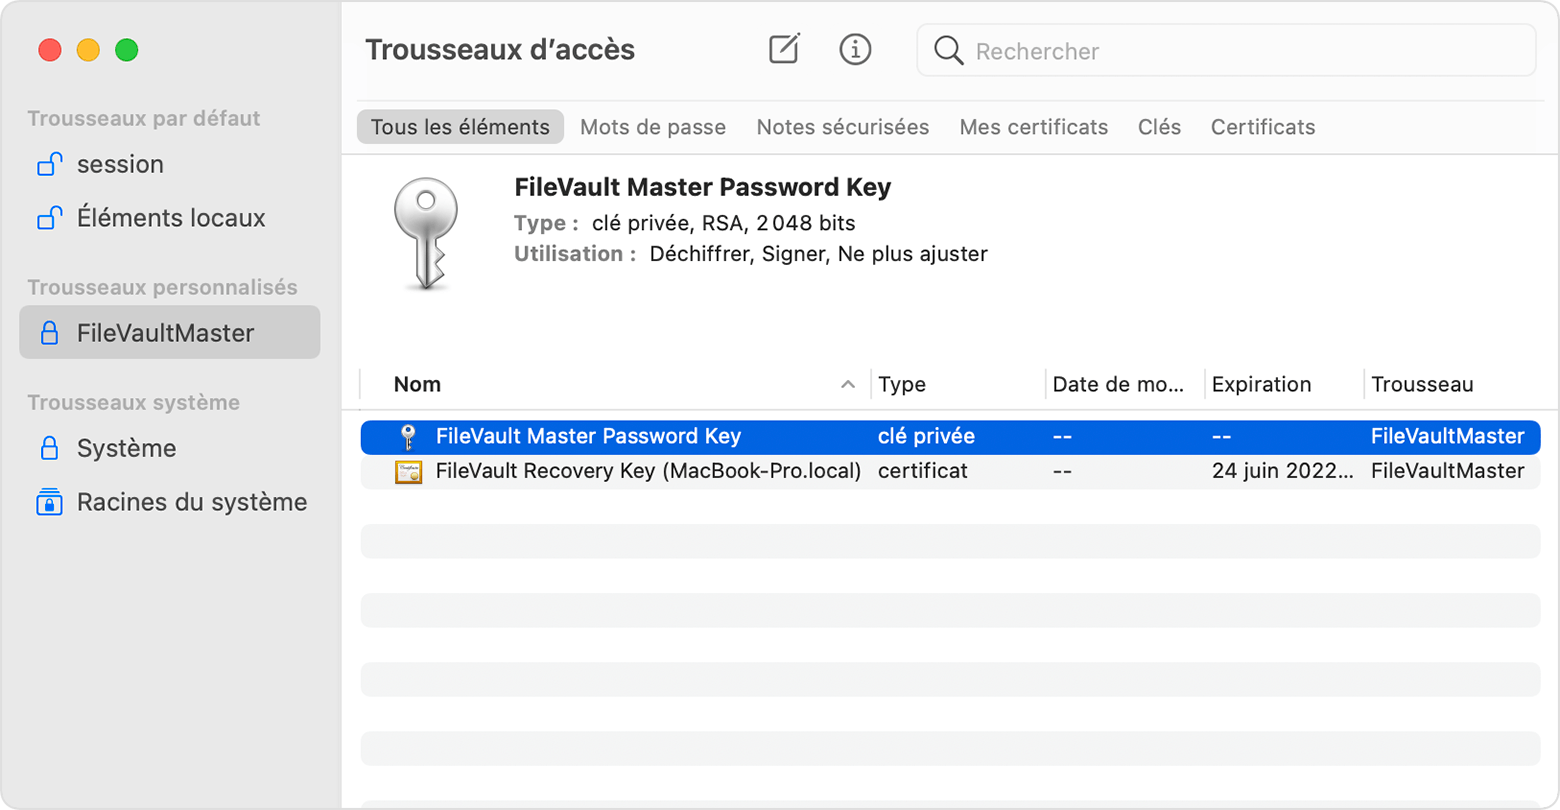 Trousseaux d’accès, illustrant la clé de mot de passe principal FileVault Master Password Key sélectionnée